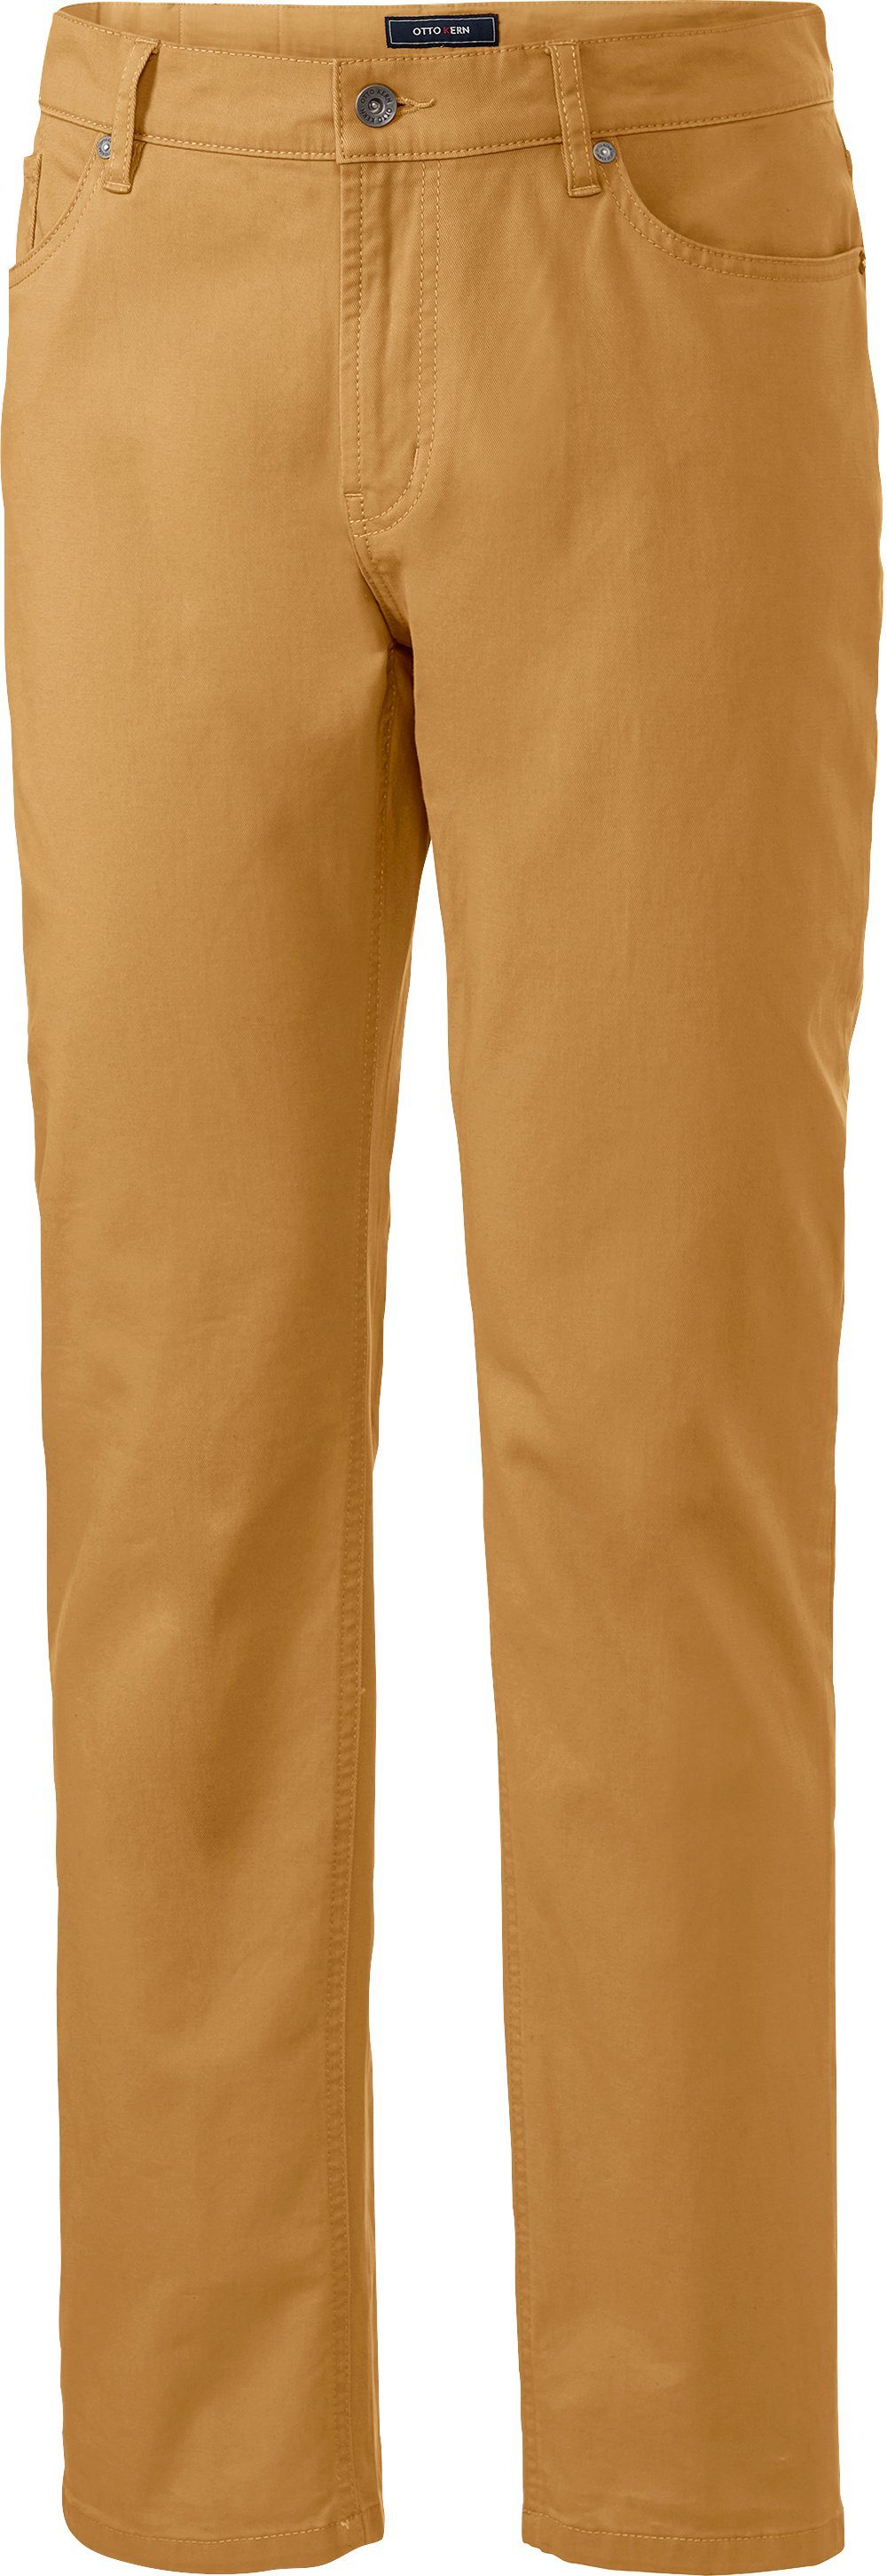 Otto Kern  Kern Stretch-Jeans im 5-Pocket-Style, mit hervorragender Farbintensität gelb